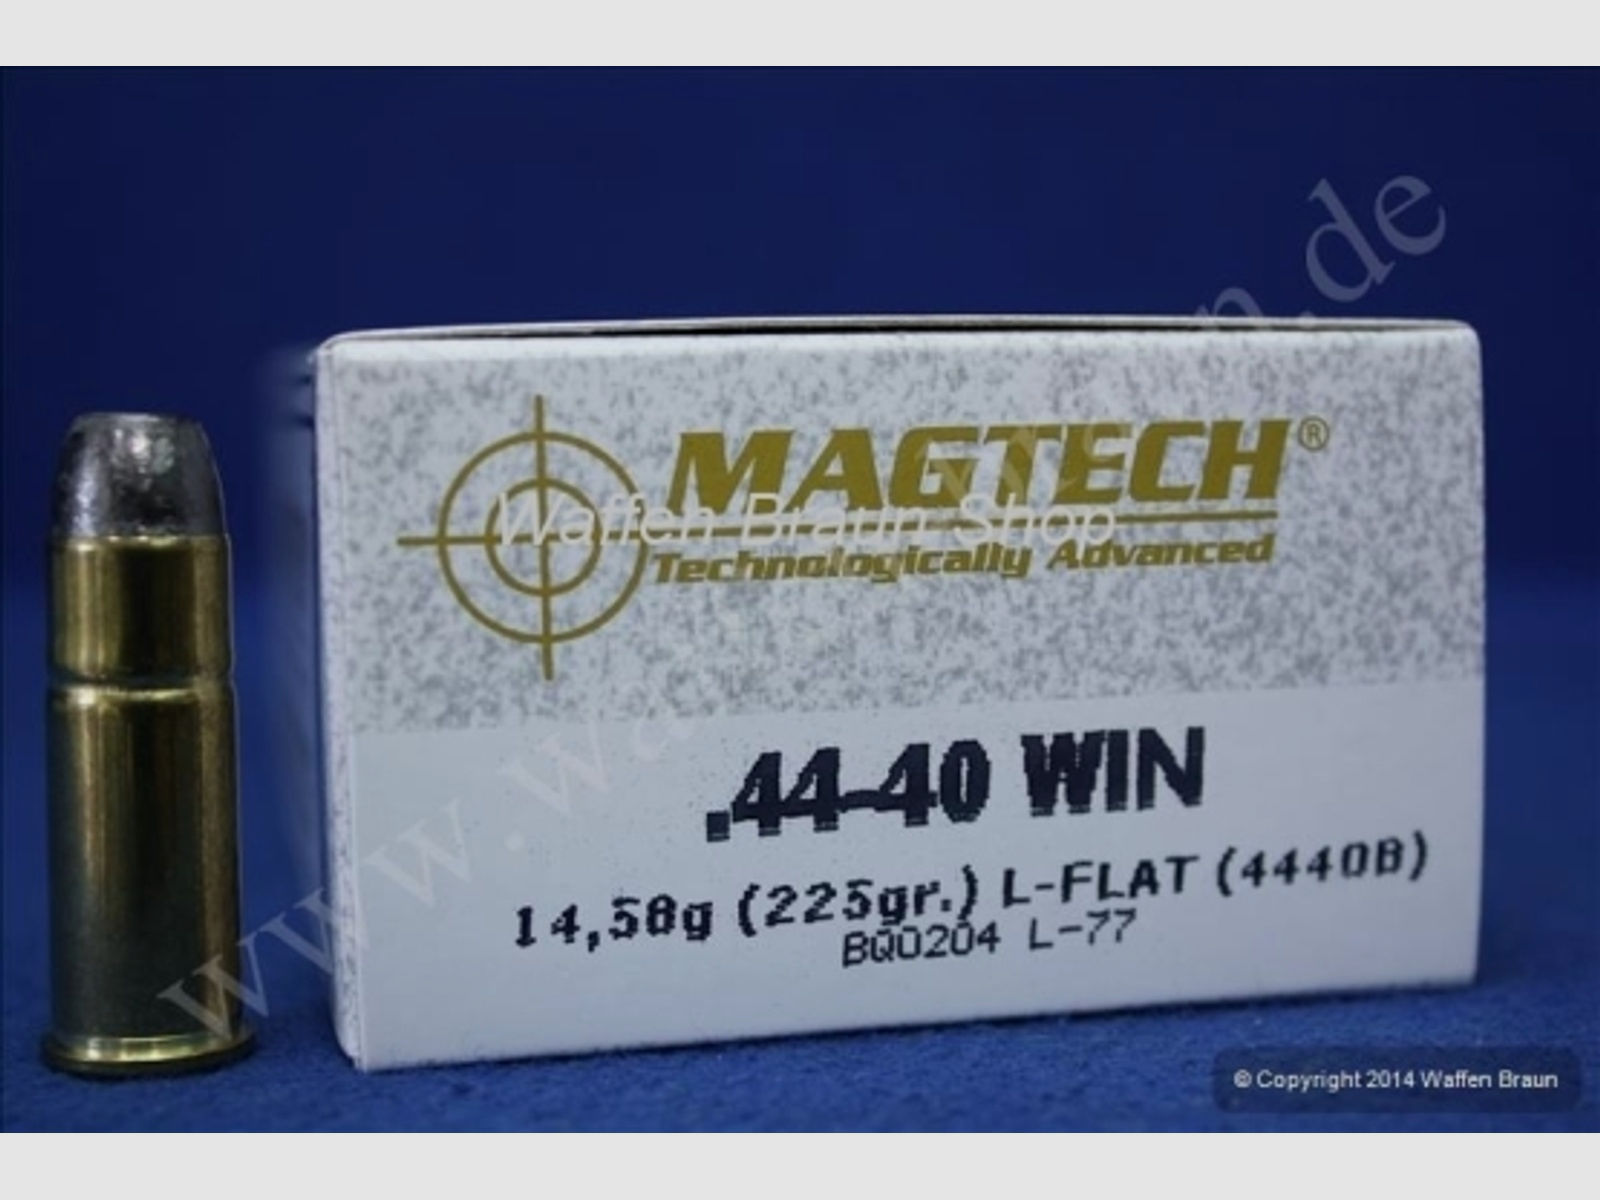 Magtech.44-40WI LFN 225GR A50#4440B